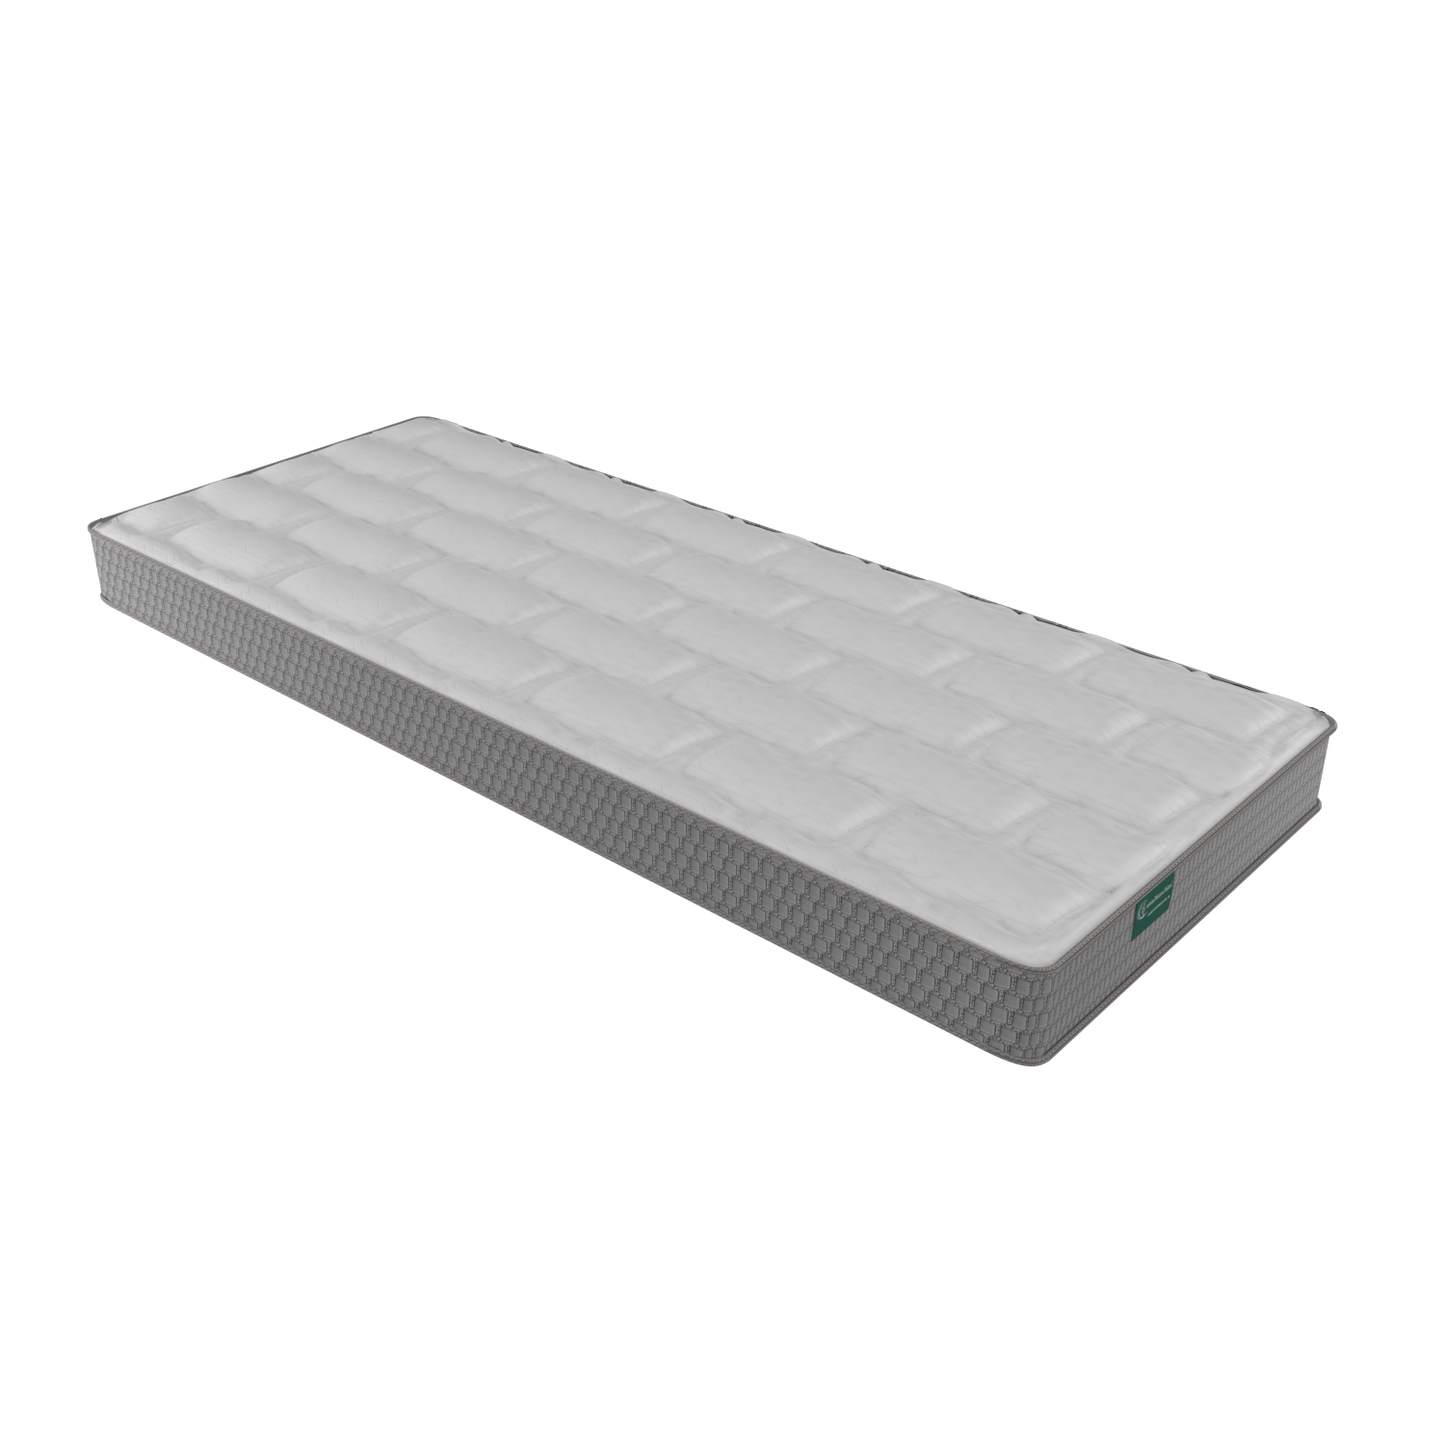 Cape - custom design, 37" x 67" mattress w/latex